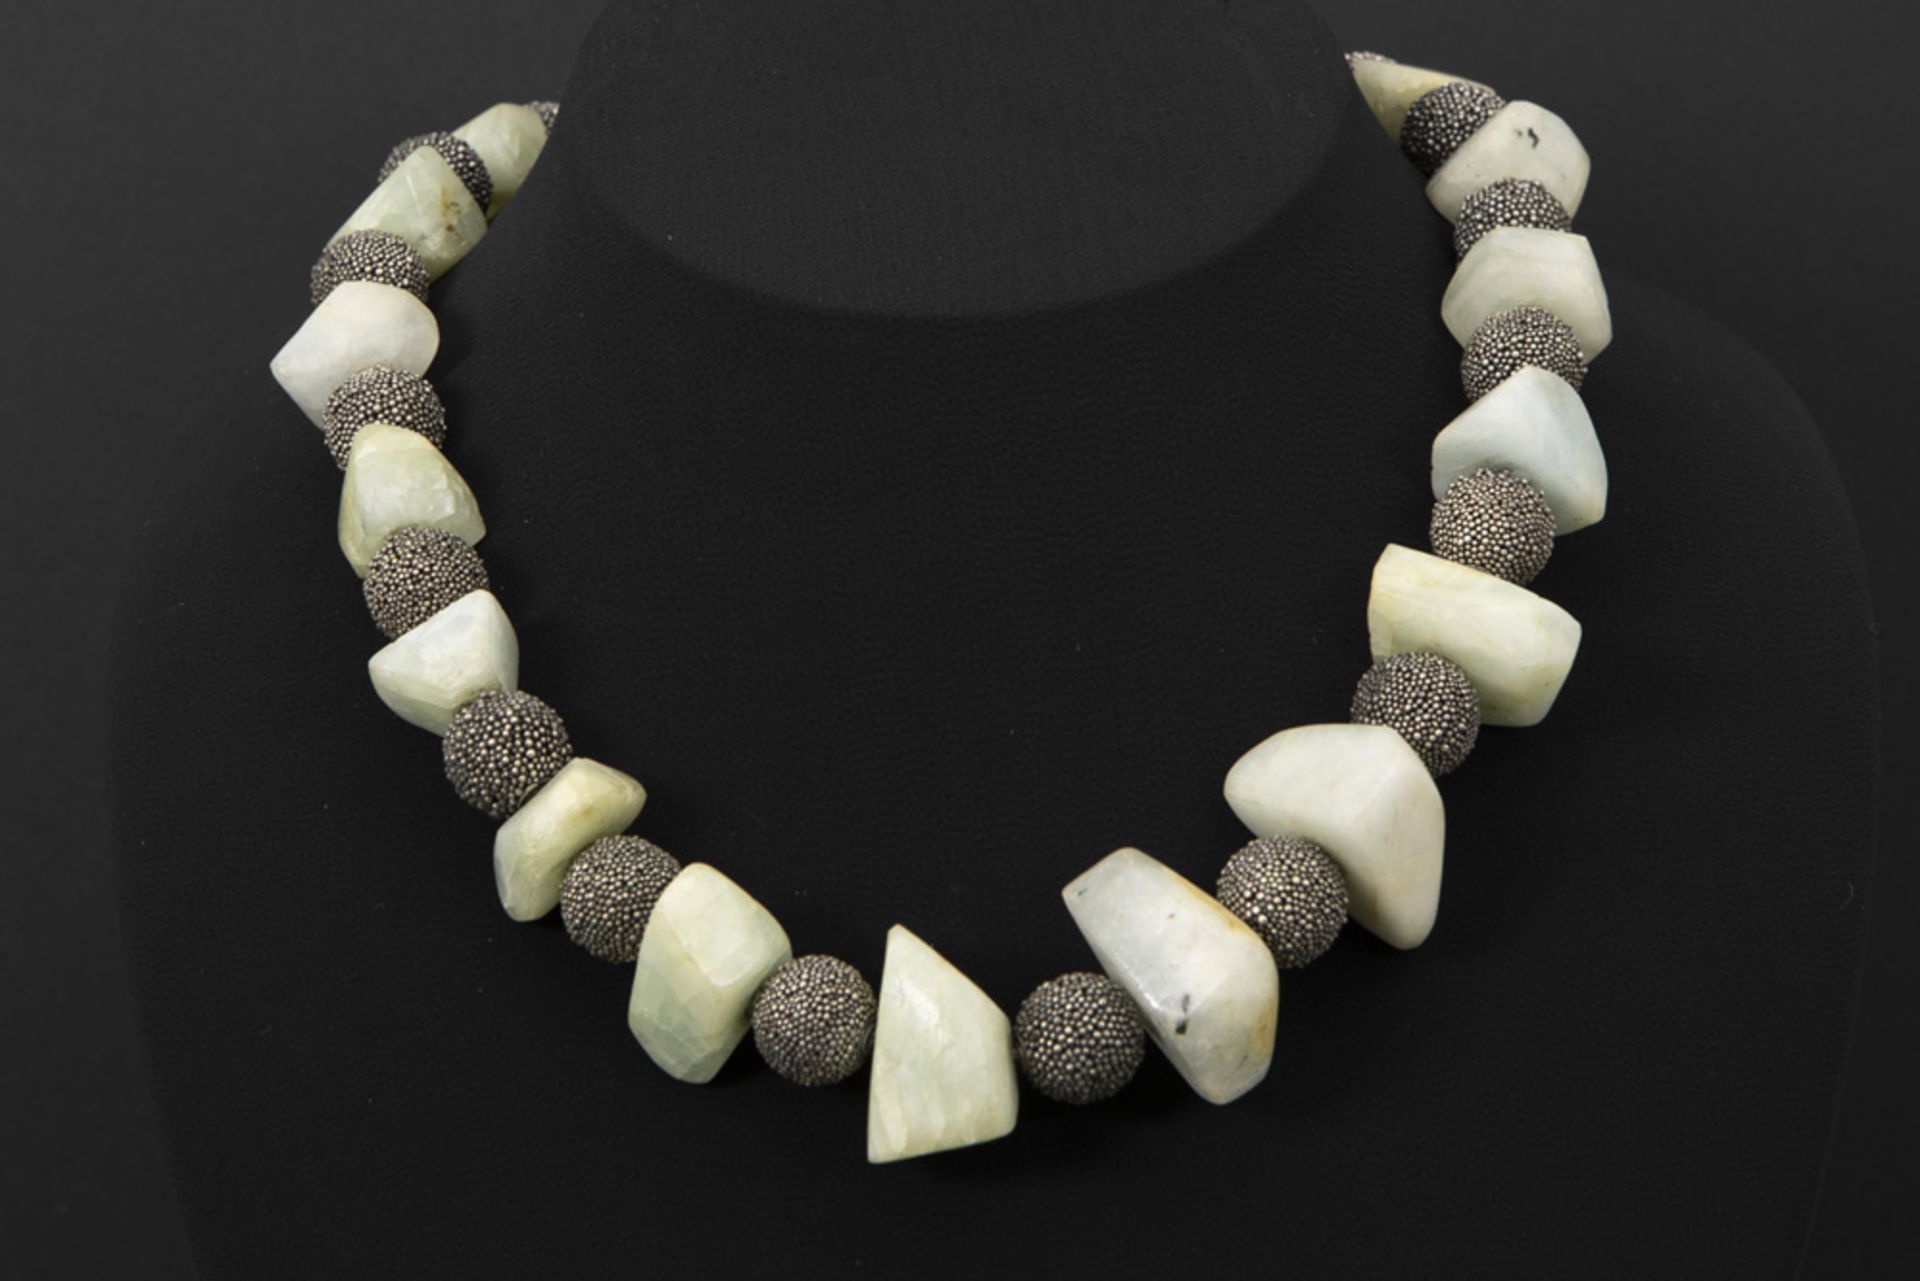 necklace with beads in silver and light green quartz || Collier met bolle zilveren kralen en met